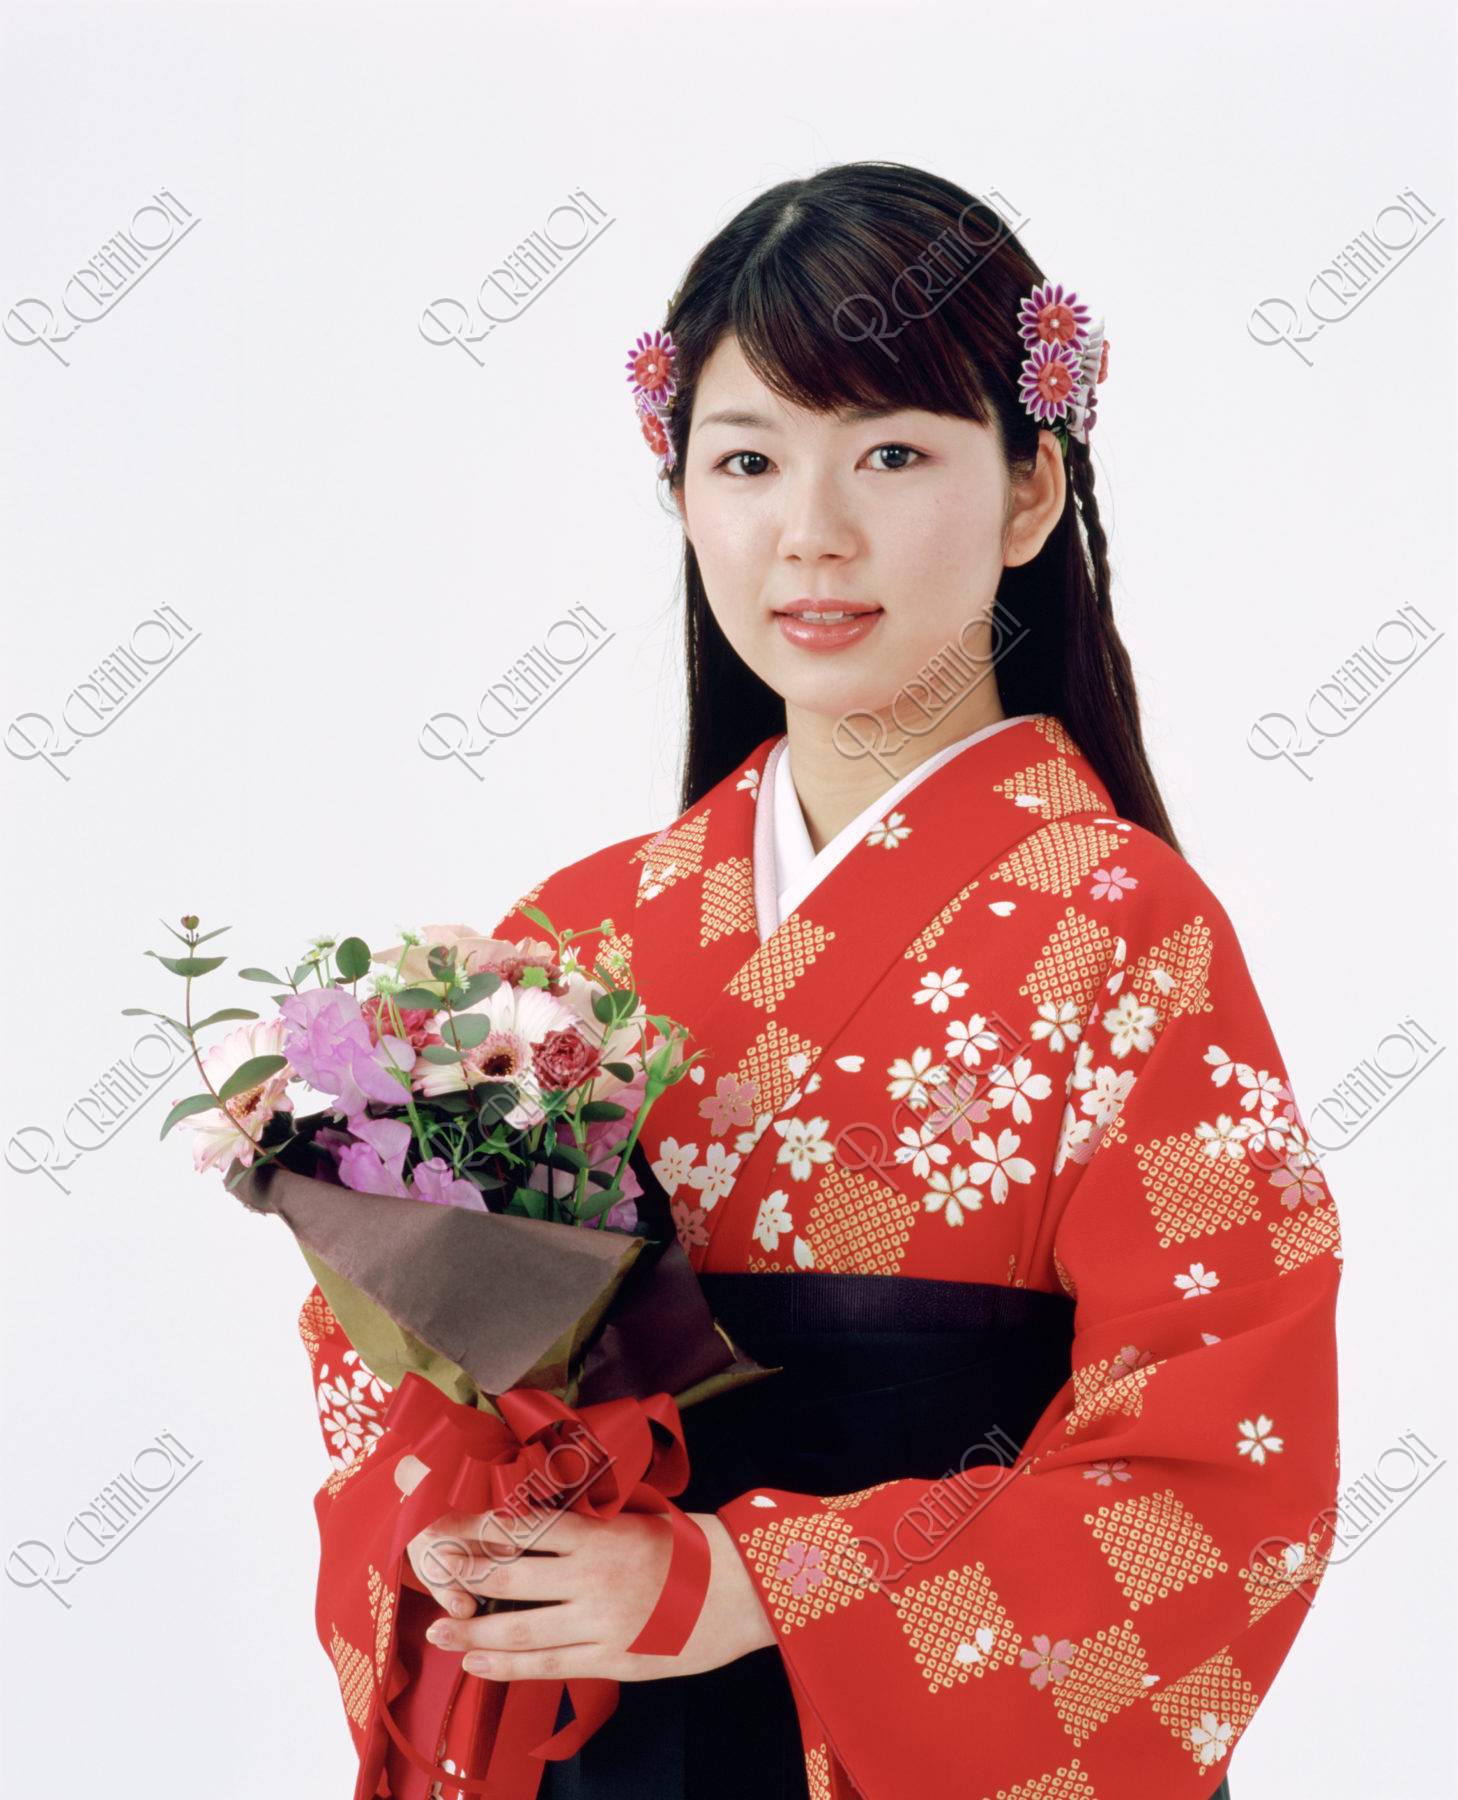 袴の女性と花束